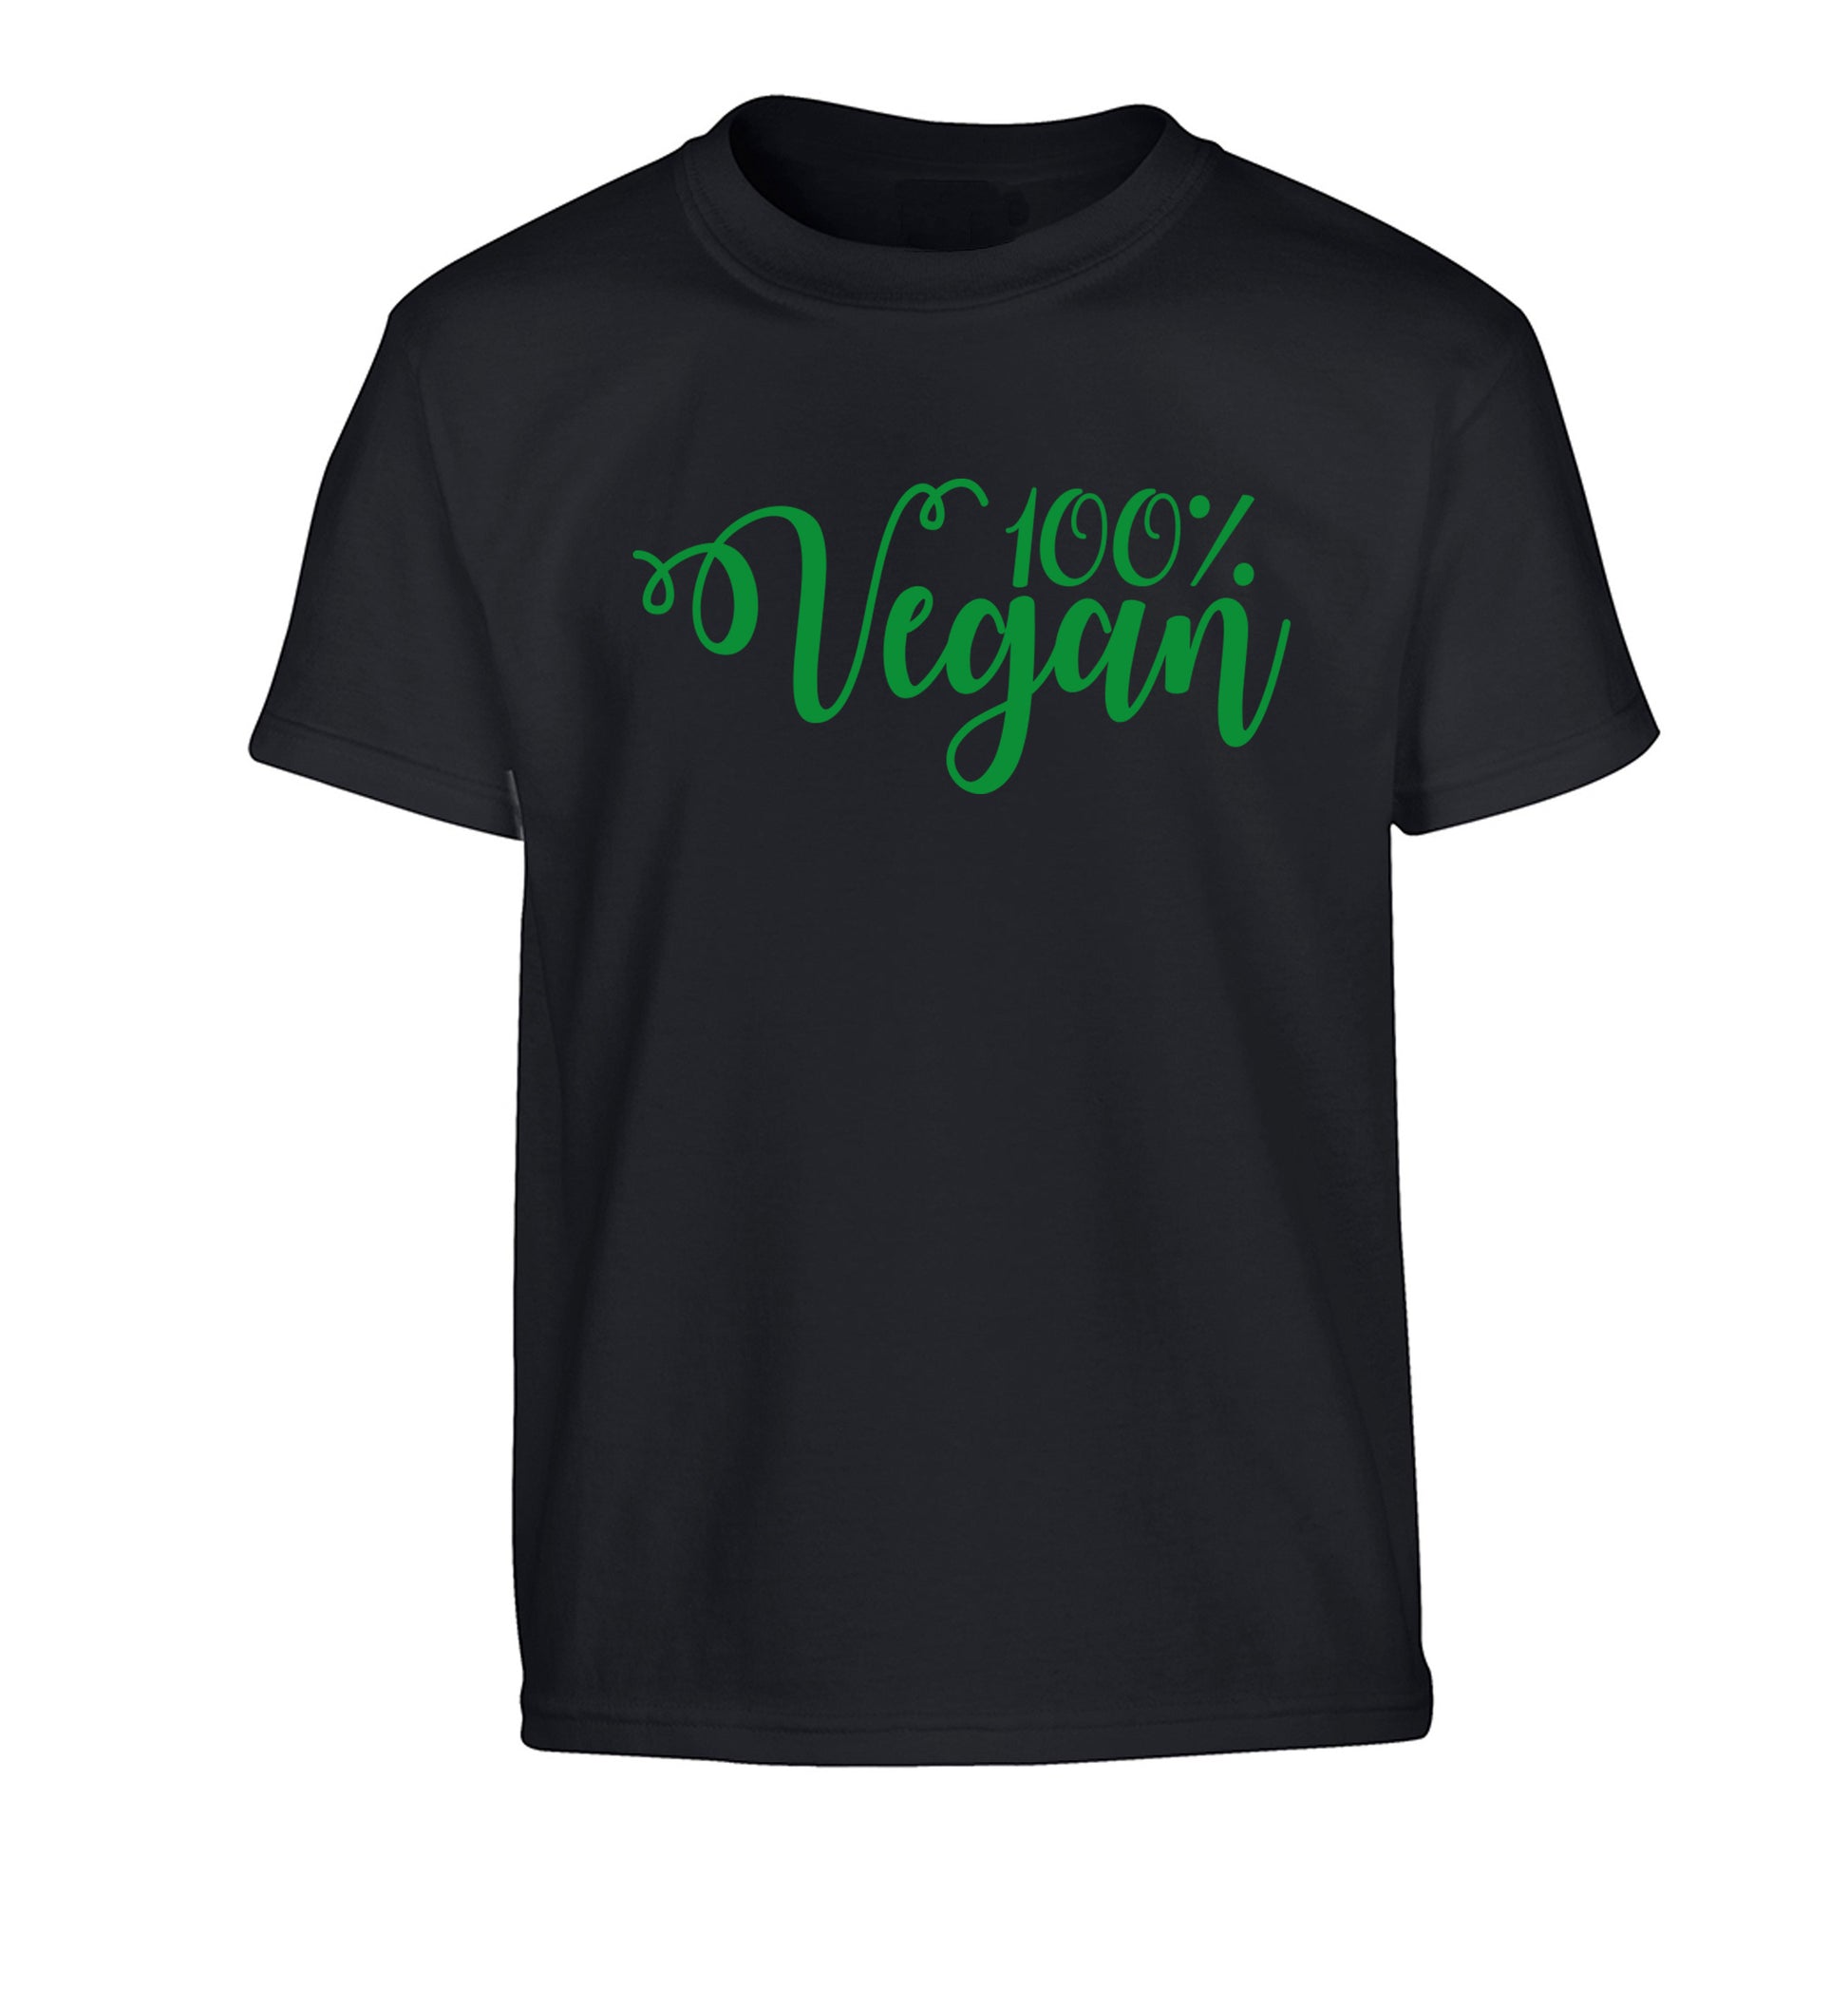 100% Vegan Children's black Tshirt 12-14 Years